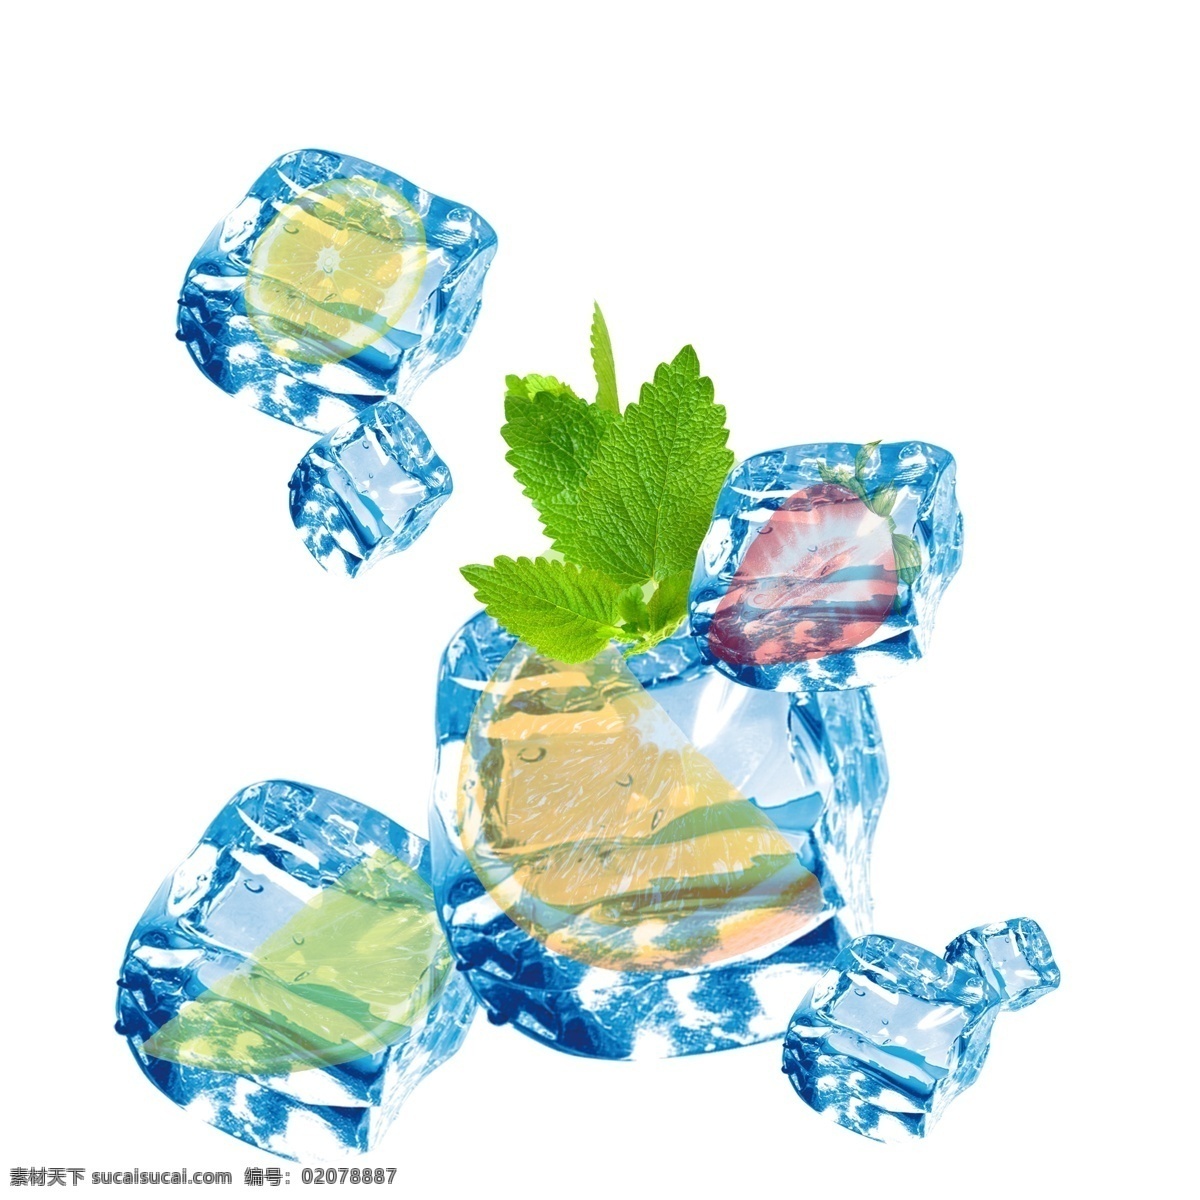 唯美 蓝色 冰块 包裹 水果 元素 冰 不规则图形 绿色树叶 蓝色冰块 几何冰晶 几何冰晶冰块